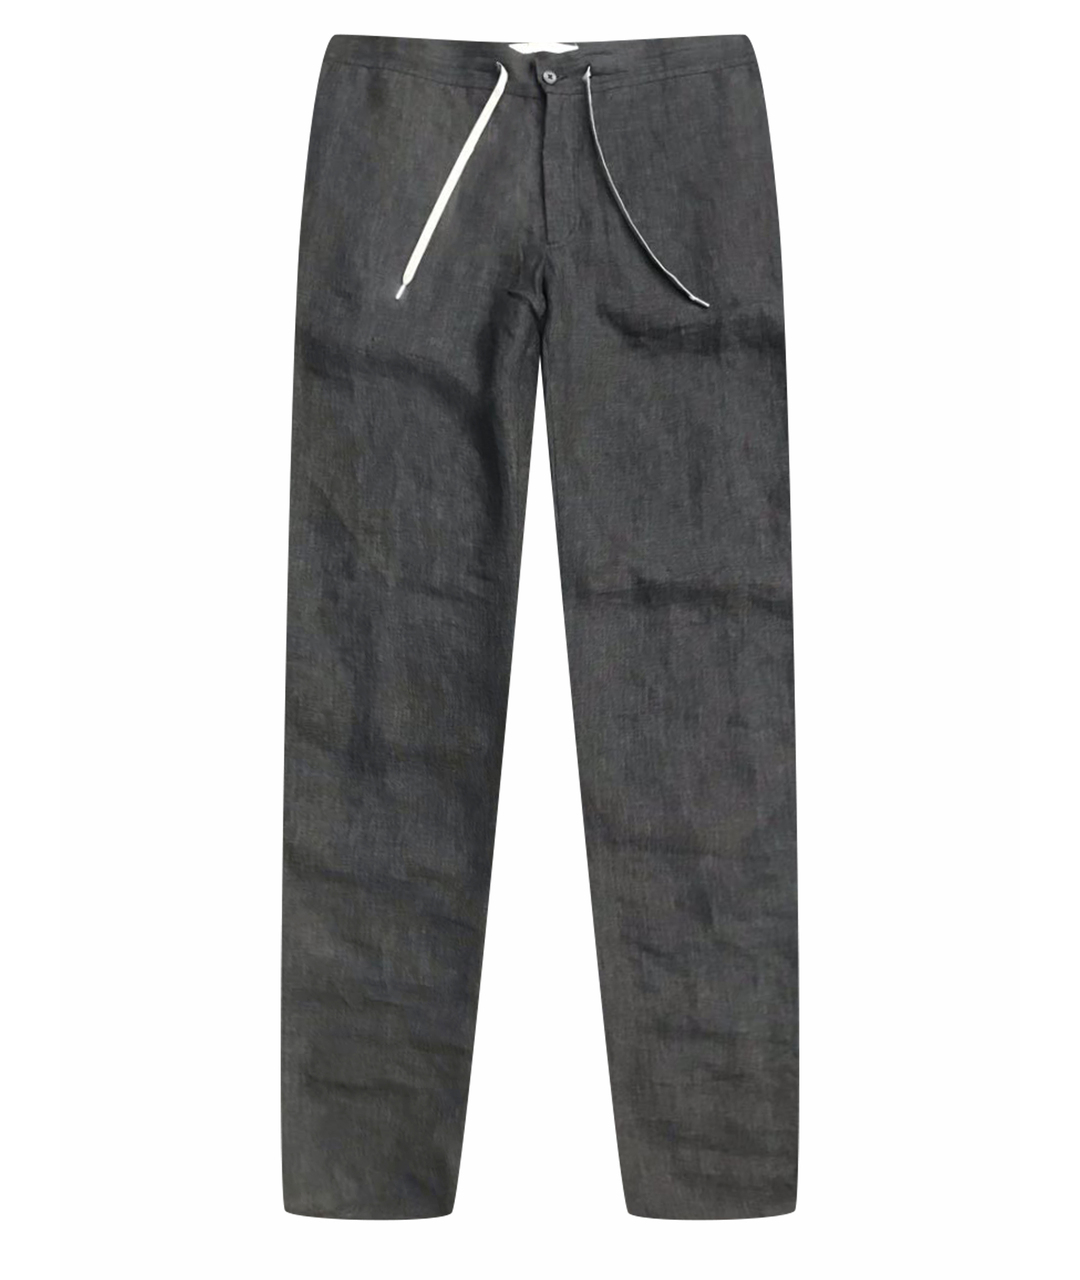 BILANCIONI Антрацитовые льняные брюки чинос, фото 1